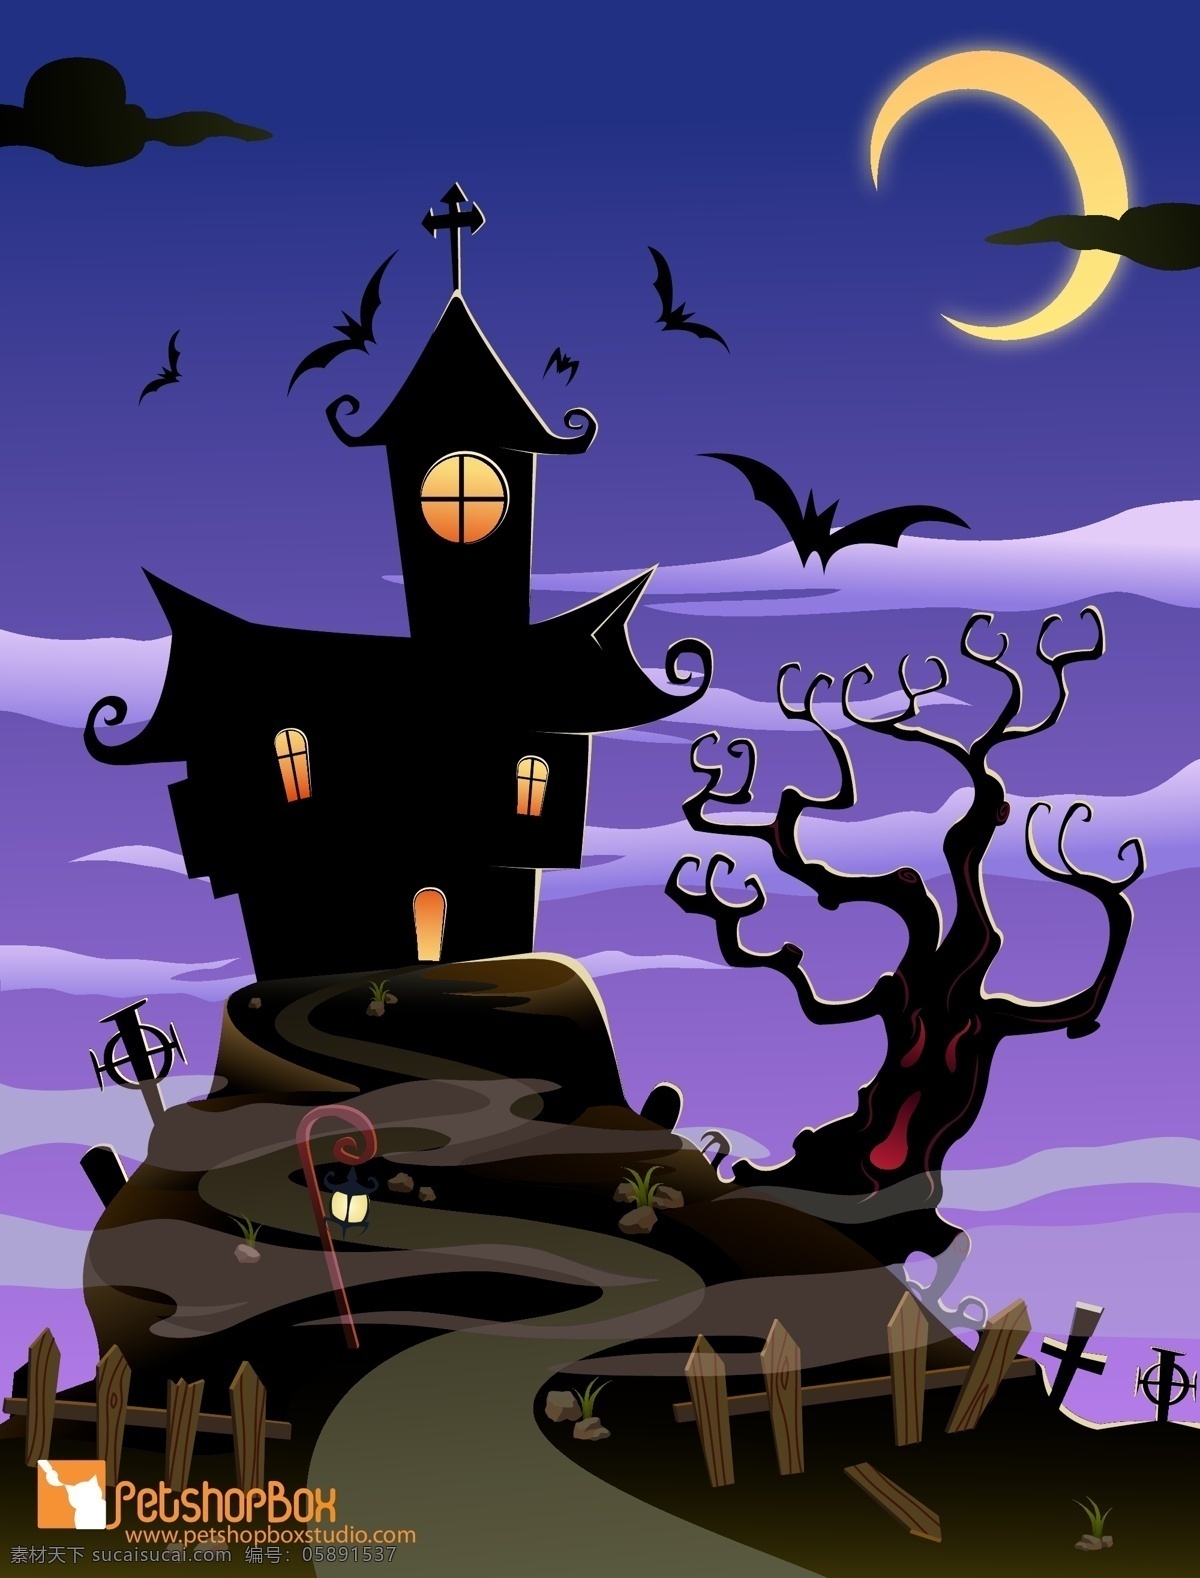 自由 令人 毛骨悚然 万圣节 房子 紫色天空 黑色房子 树木